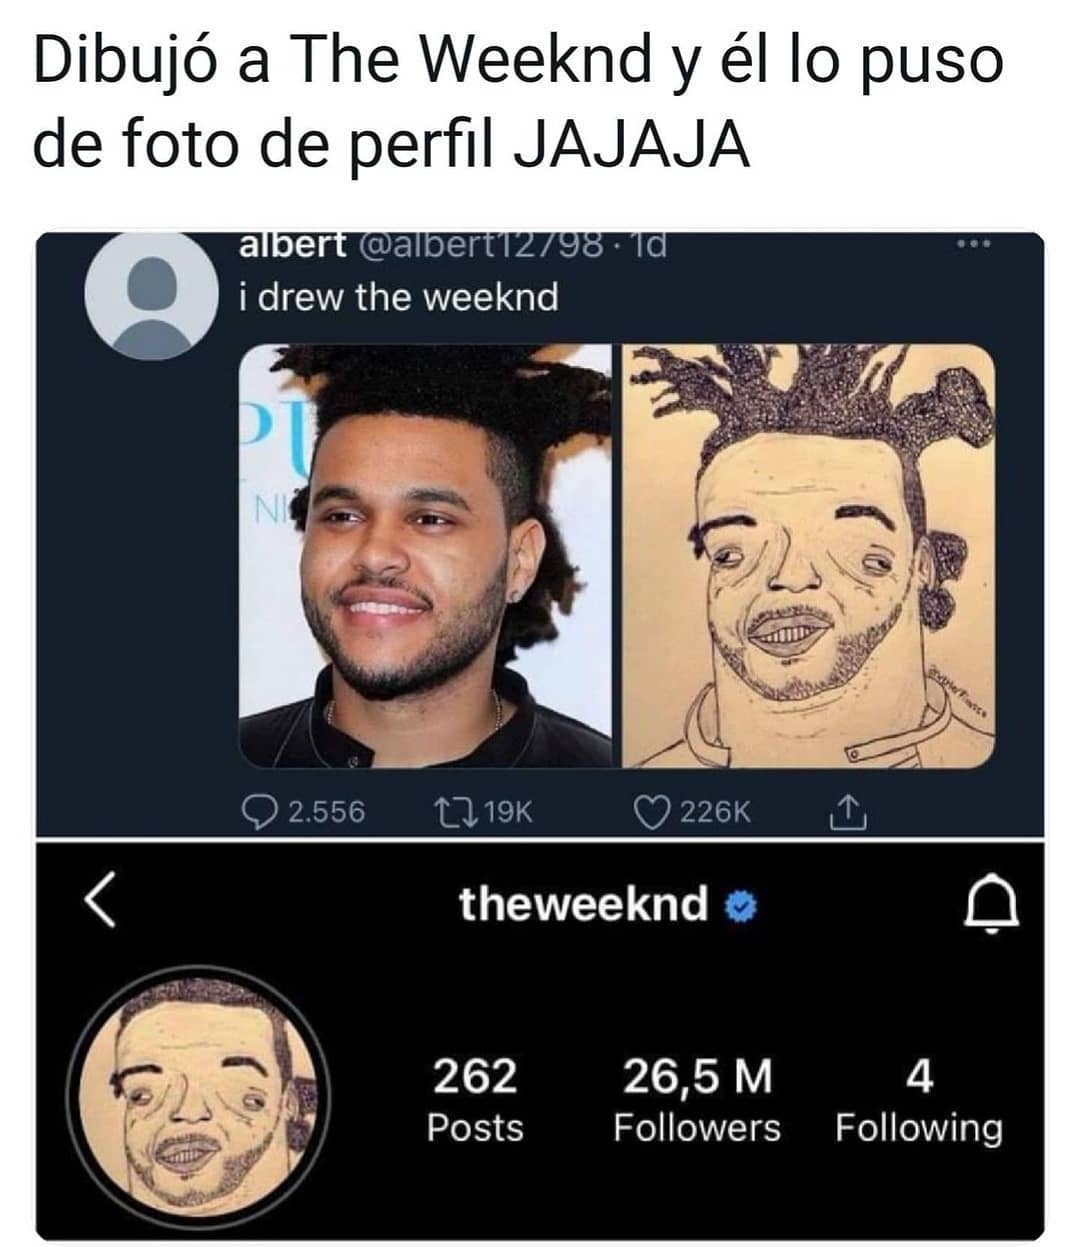 Dibujó a The Weeknd y él lo puso de foto de perfil jajaja.